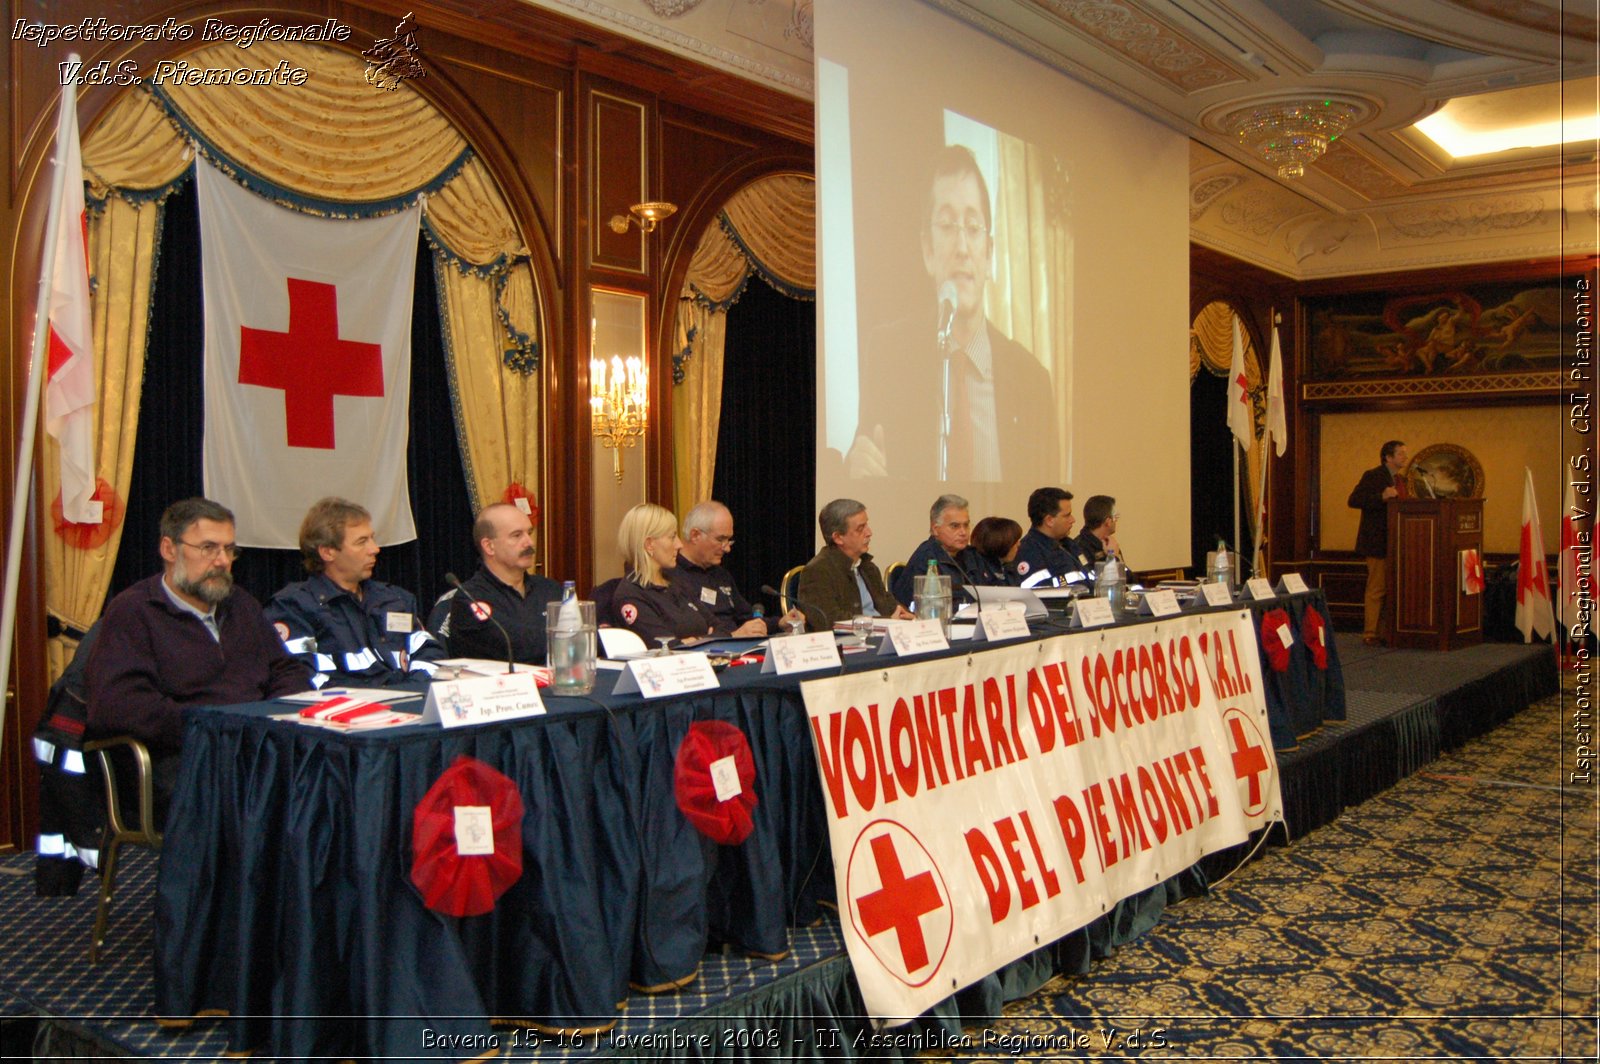 Baveno 15-16 Novembre 2008 - II Assemblea Regionale V.d.S. -  Croce Rossa Italiana - Ispettorato Regionale Volontari del Soccorso Piemonte